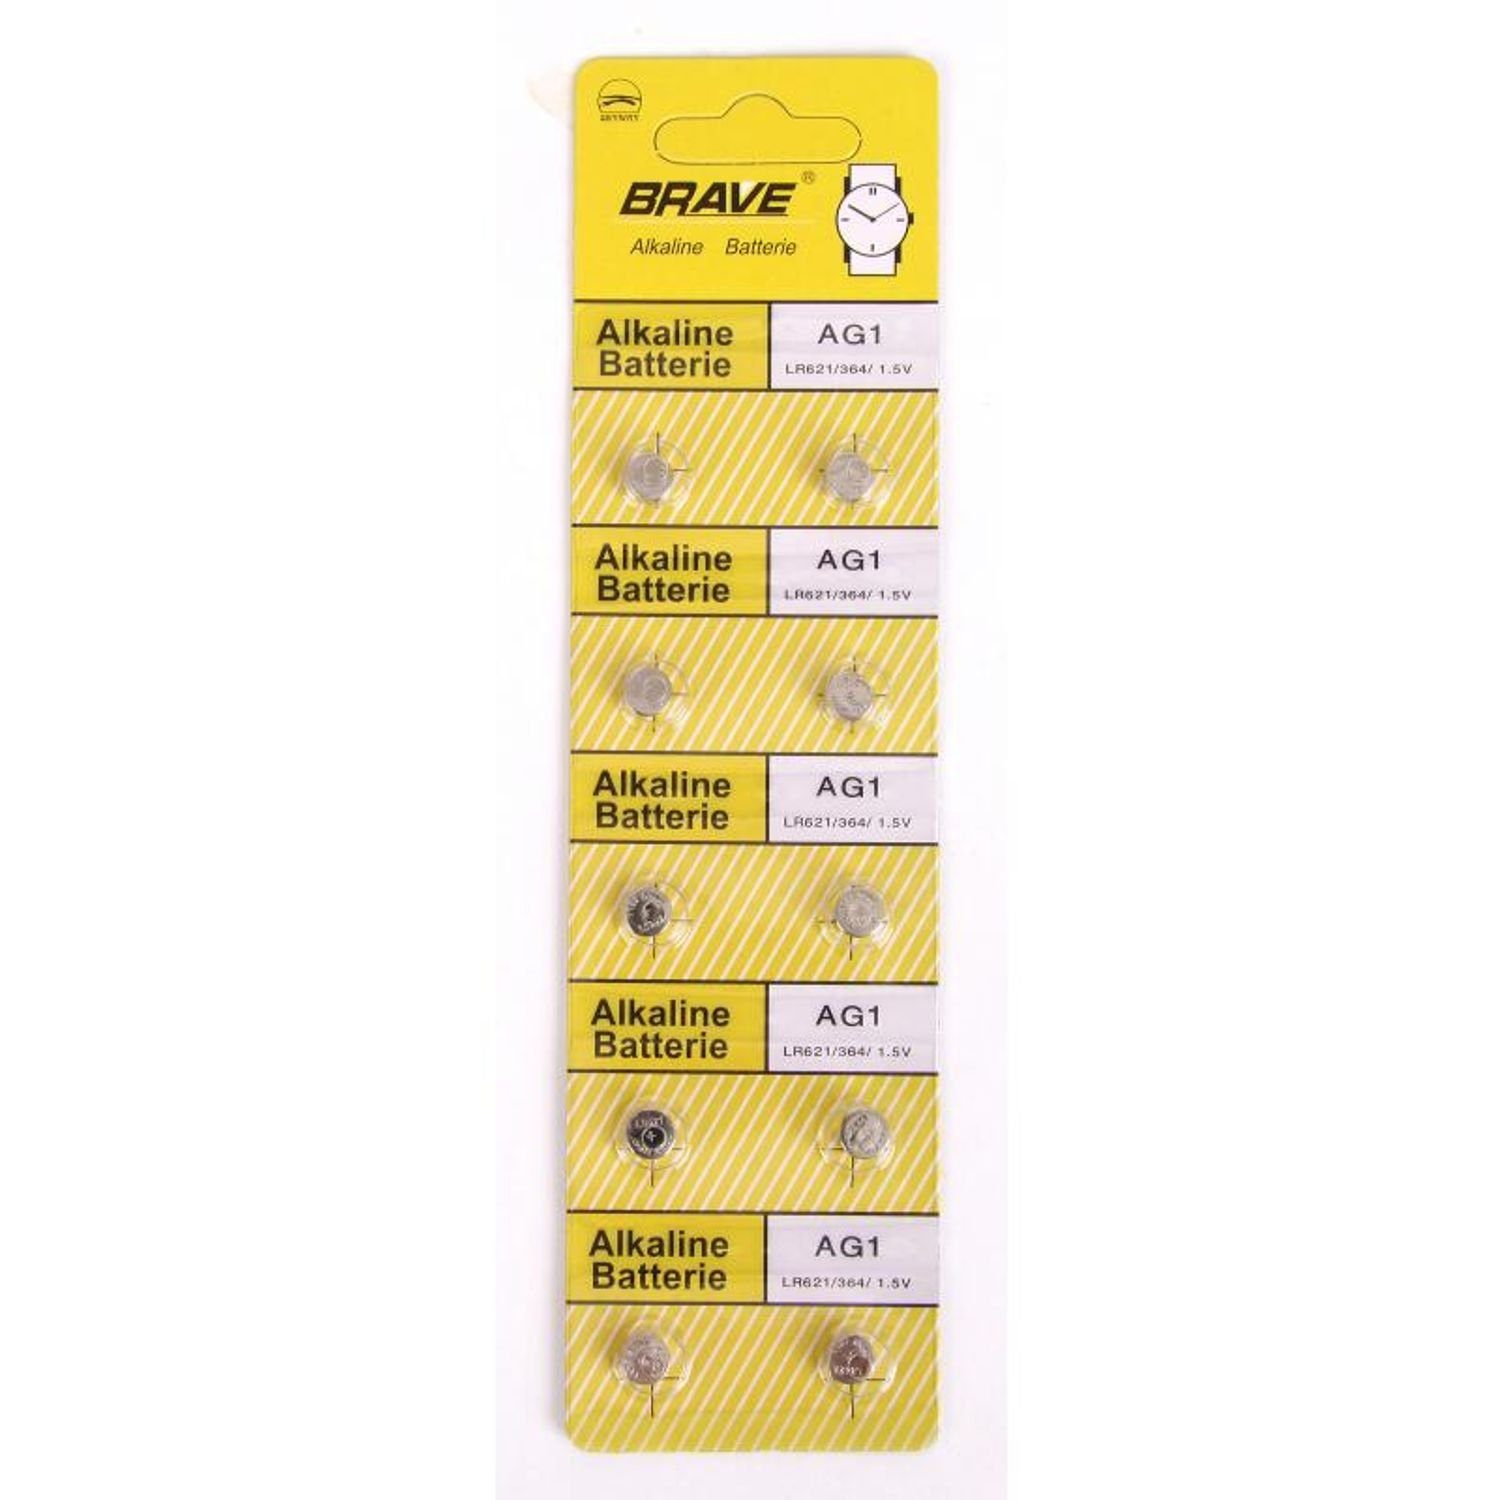 BURI 24x 10er Set Alkaline Knopfzellen LR621/364, 1,5V AG1 Armbanduhren 24 Batterie, (240 St)